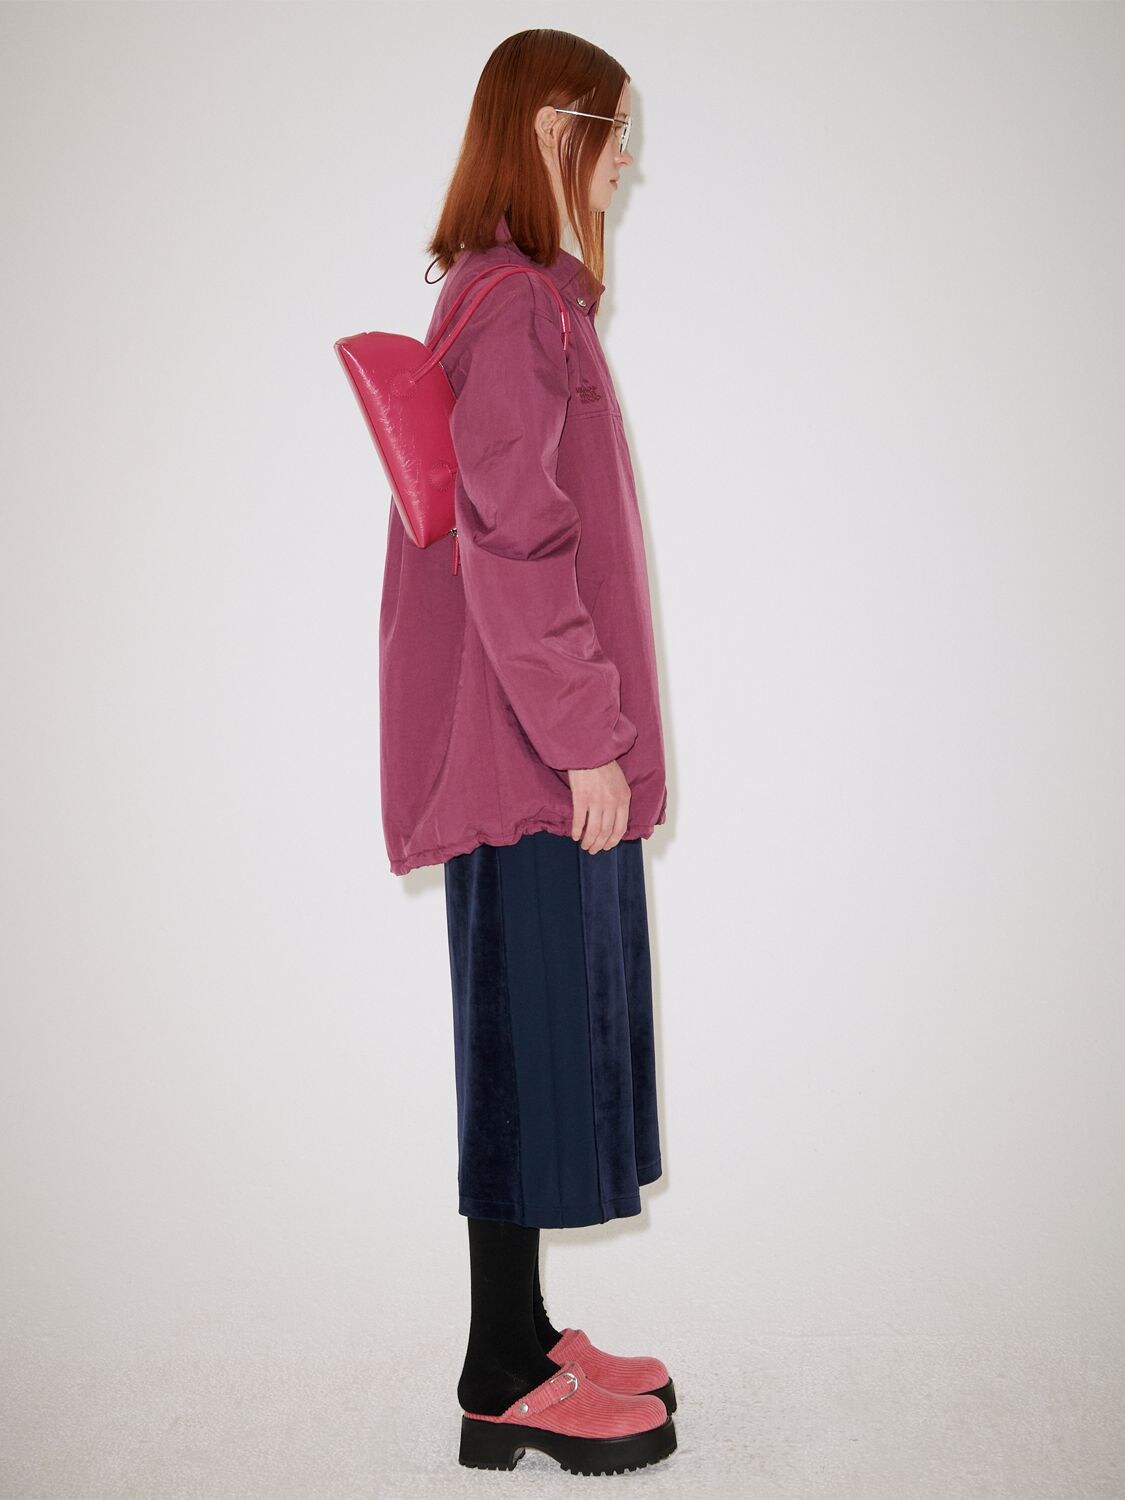 Marge Sherwood Bessette Shoulder Bag In Lavender | ModeSens